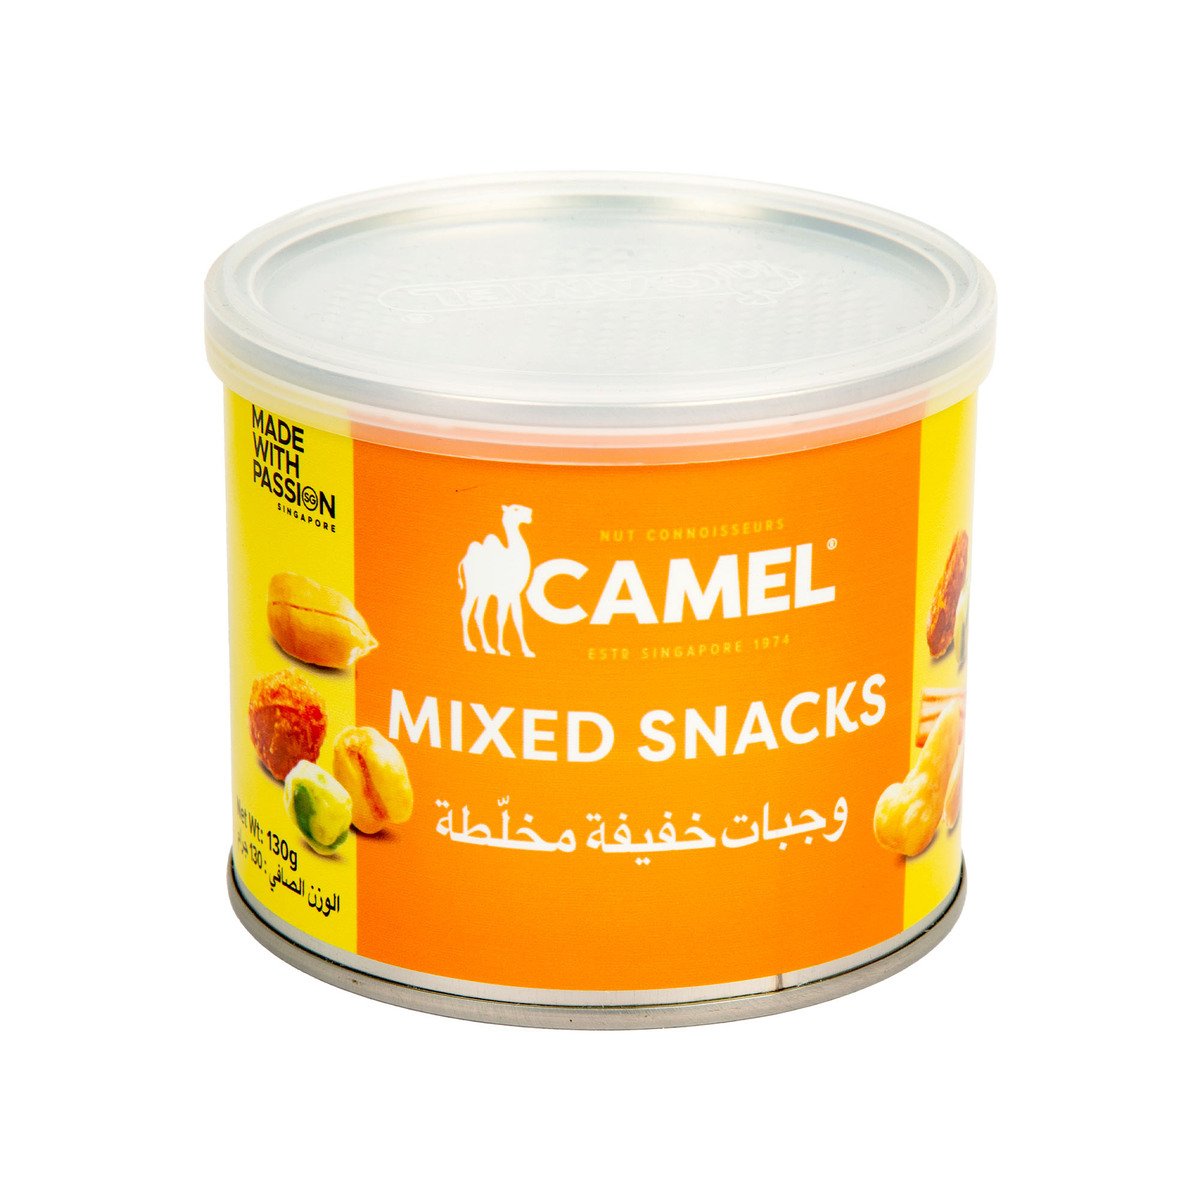 Camel Mixed Snacks 130 g